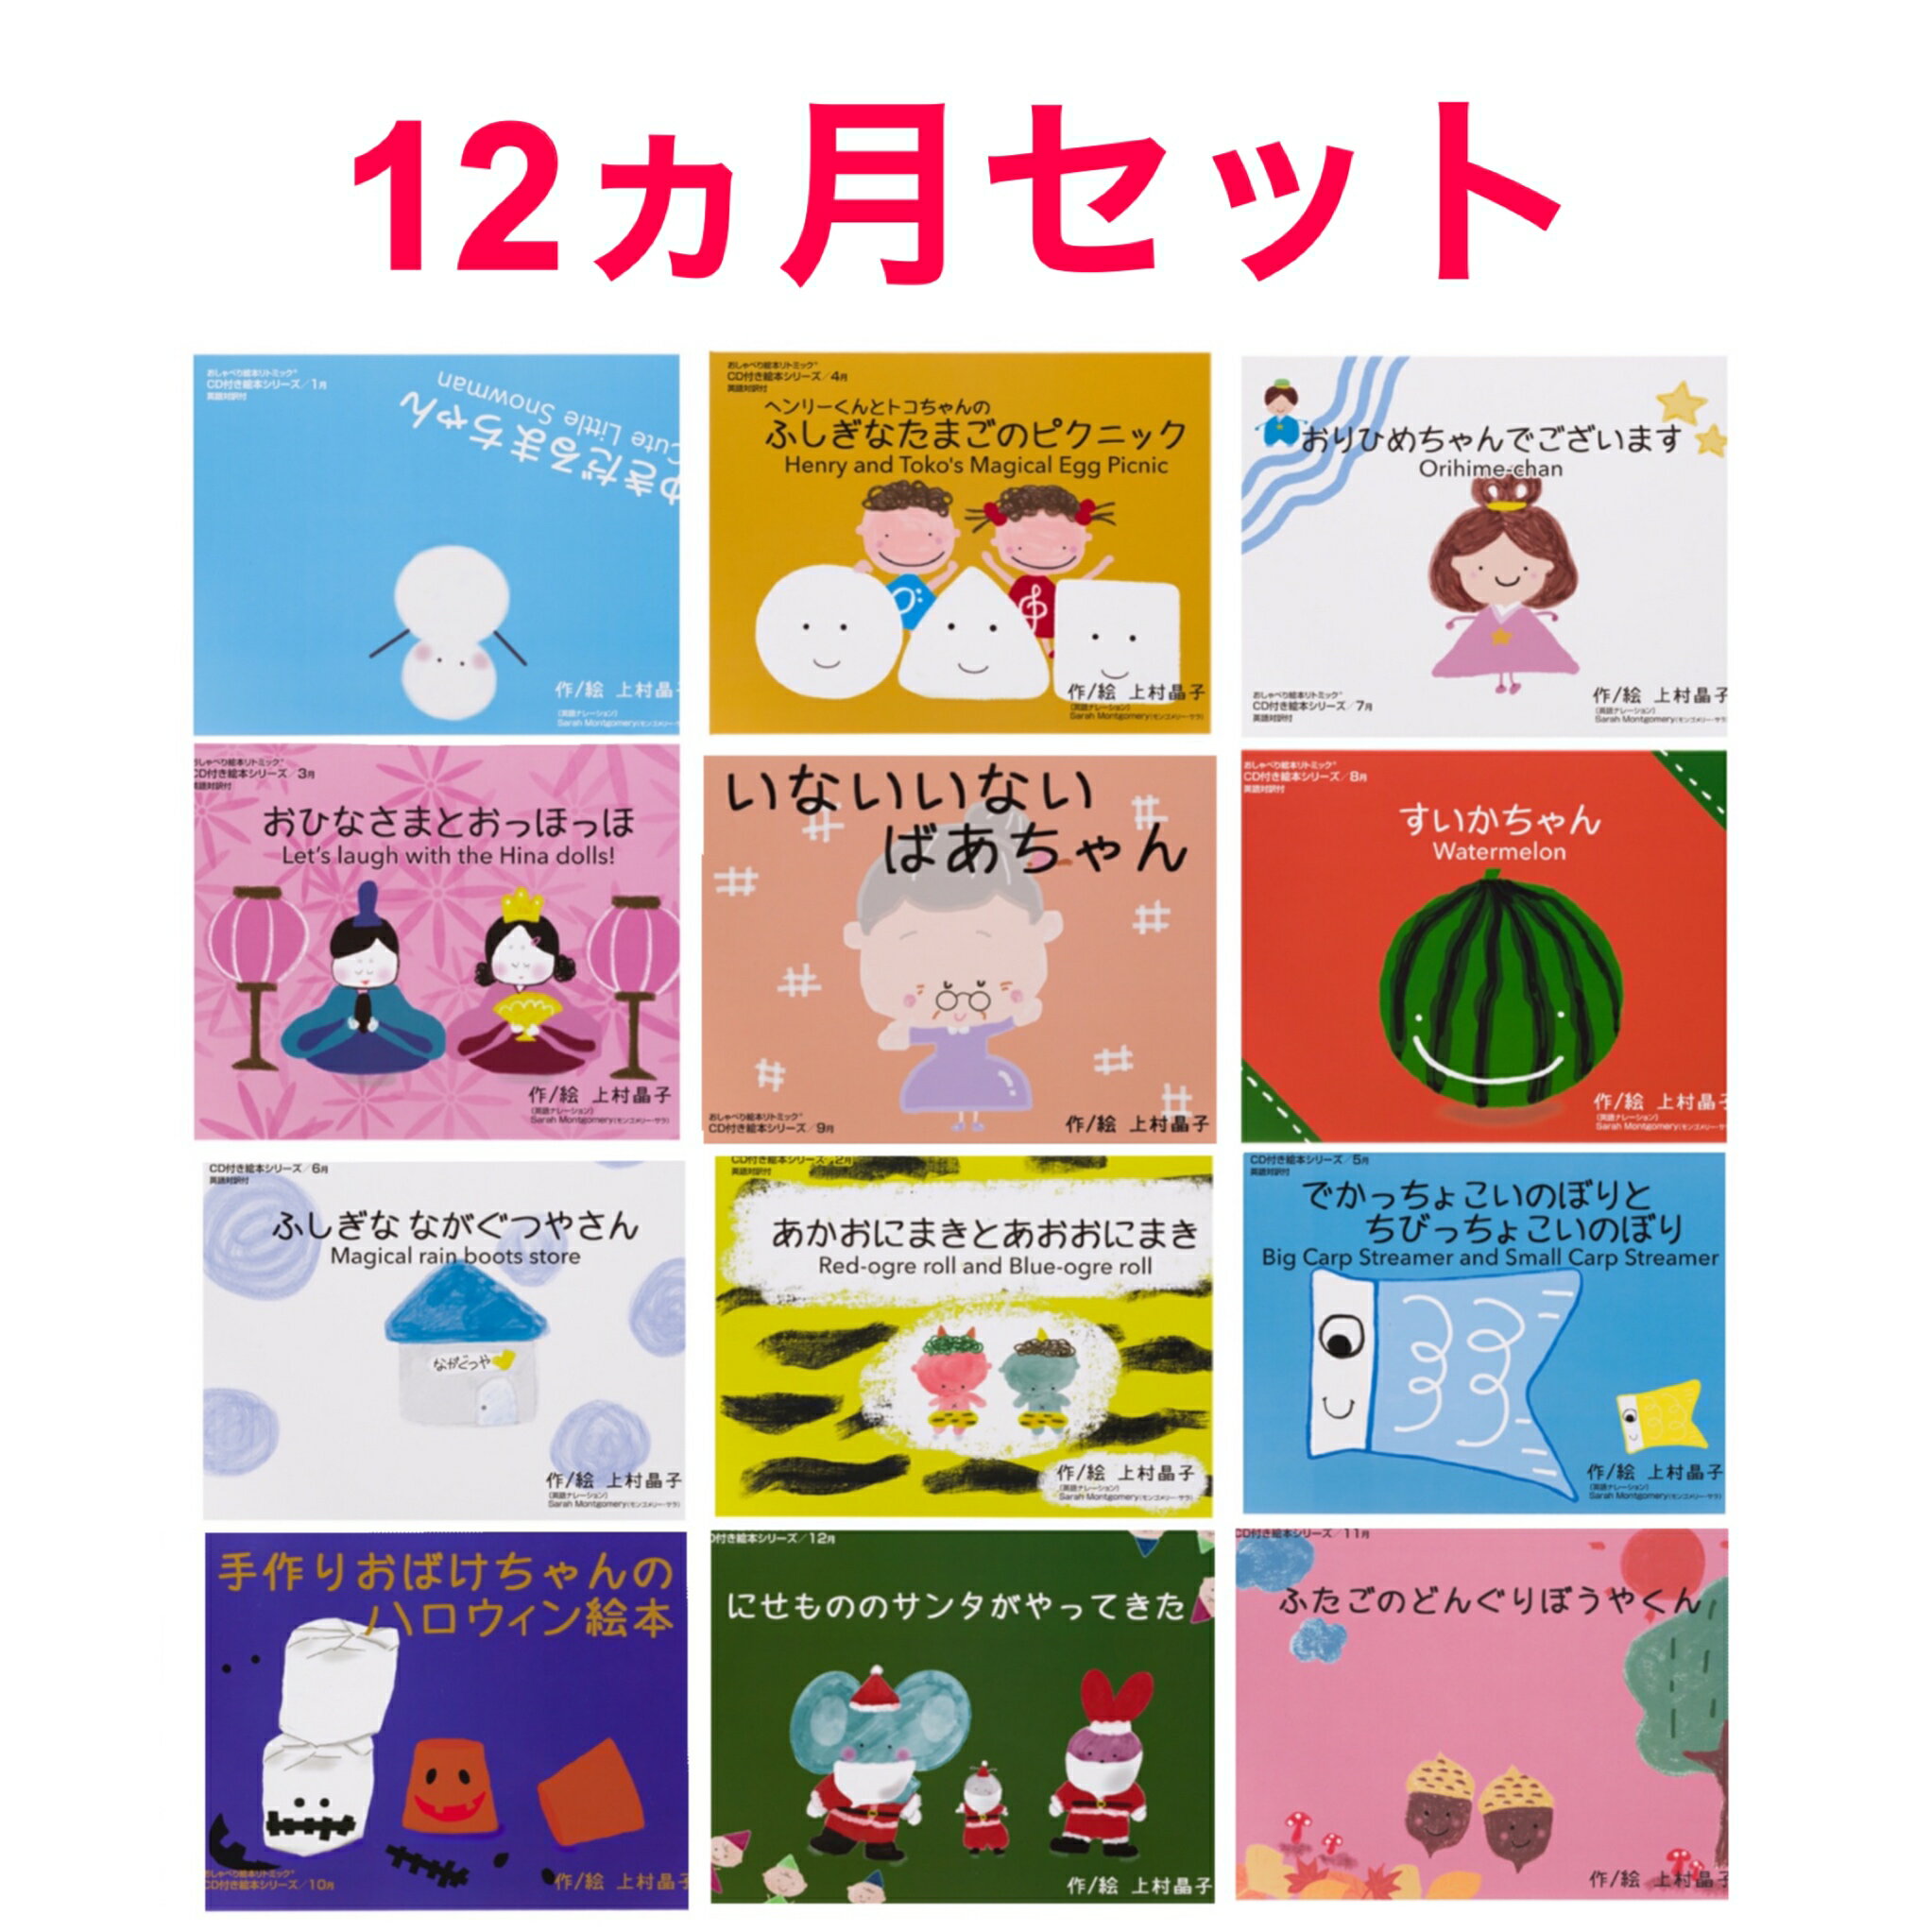 ●英語で！日本語で！のりのりリトミック12ヶ月セット 英語・日本語対応のバイリンガル絵本9冊と、日本語の読み聞かせ絵本3冊がセットになった絵本です。日本初！日本語と英語で「読んで」「聞いて」「動ける」音楽CD付バイリンガル絵本です。季節のお話を楽しみながら、お家でネイティブの発音を磨くことが出来ます。英語絵本や幼児教材として活用できるので、自宅で楽しく英語を学ぶことができますよ。 音楽講師で指導歴38年の経験から生まれた、こどもの集中力を最大限に高めるしかけが満載の人気教材です。もちろん通常の絵本としての活用もOK！読み聞かせが苦手でも、ナレーション付きCDが付いているので安心です。 ●リトミックや英語の教材として活用できます 教材を制作したのは、音楽講師歴38年の大ベテラン。英語のナレーション入り音楽CDをかけながら、絵本を使った英語リトミックが出来ます。音楽が作り出す世界観が感性へダイレクトに届くので、こどもたちはレッスンに夢中になります。シンプルでわかりやすい季節の絵本に音楽が付いています。リトミックの要素を取り入れた参加型の絵本は、赤ちゃんや小さなお子様が楽しめる内容です。 え読み聞かせが苦手でもナレーションがあるので大丈夫。 ●内容・絵本12冊・英語・日本語ナレーション入り音源CD12枚関連商品はこちら【12ヶ月セット】英語絵本 本 英語教材 ...36,960円